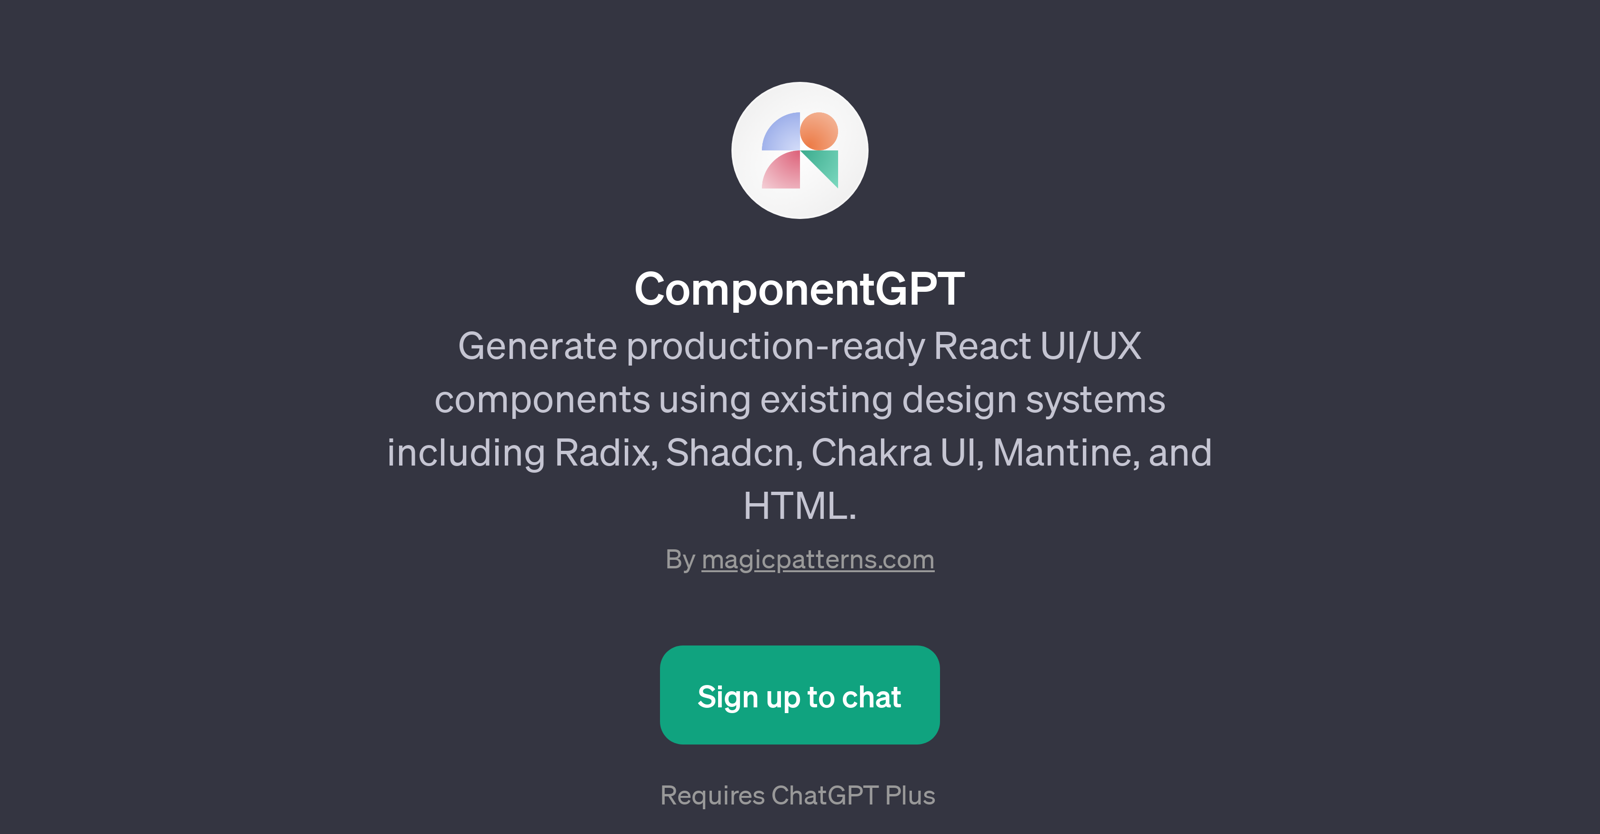 ComponentGPT website